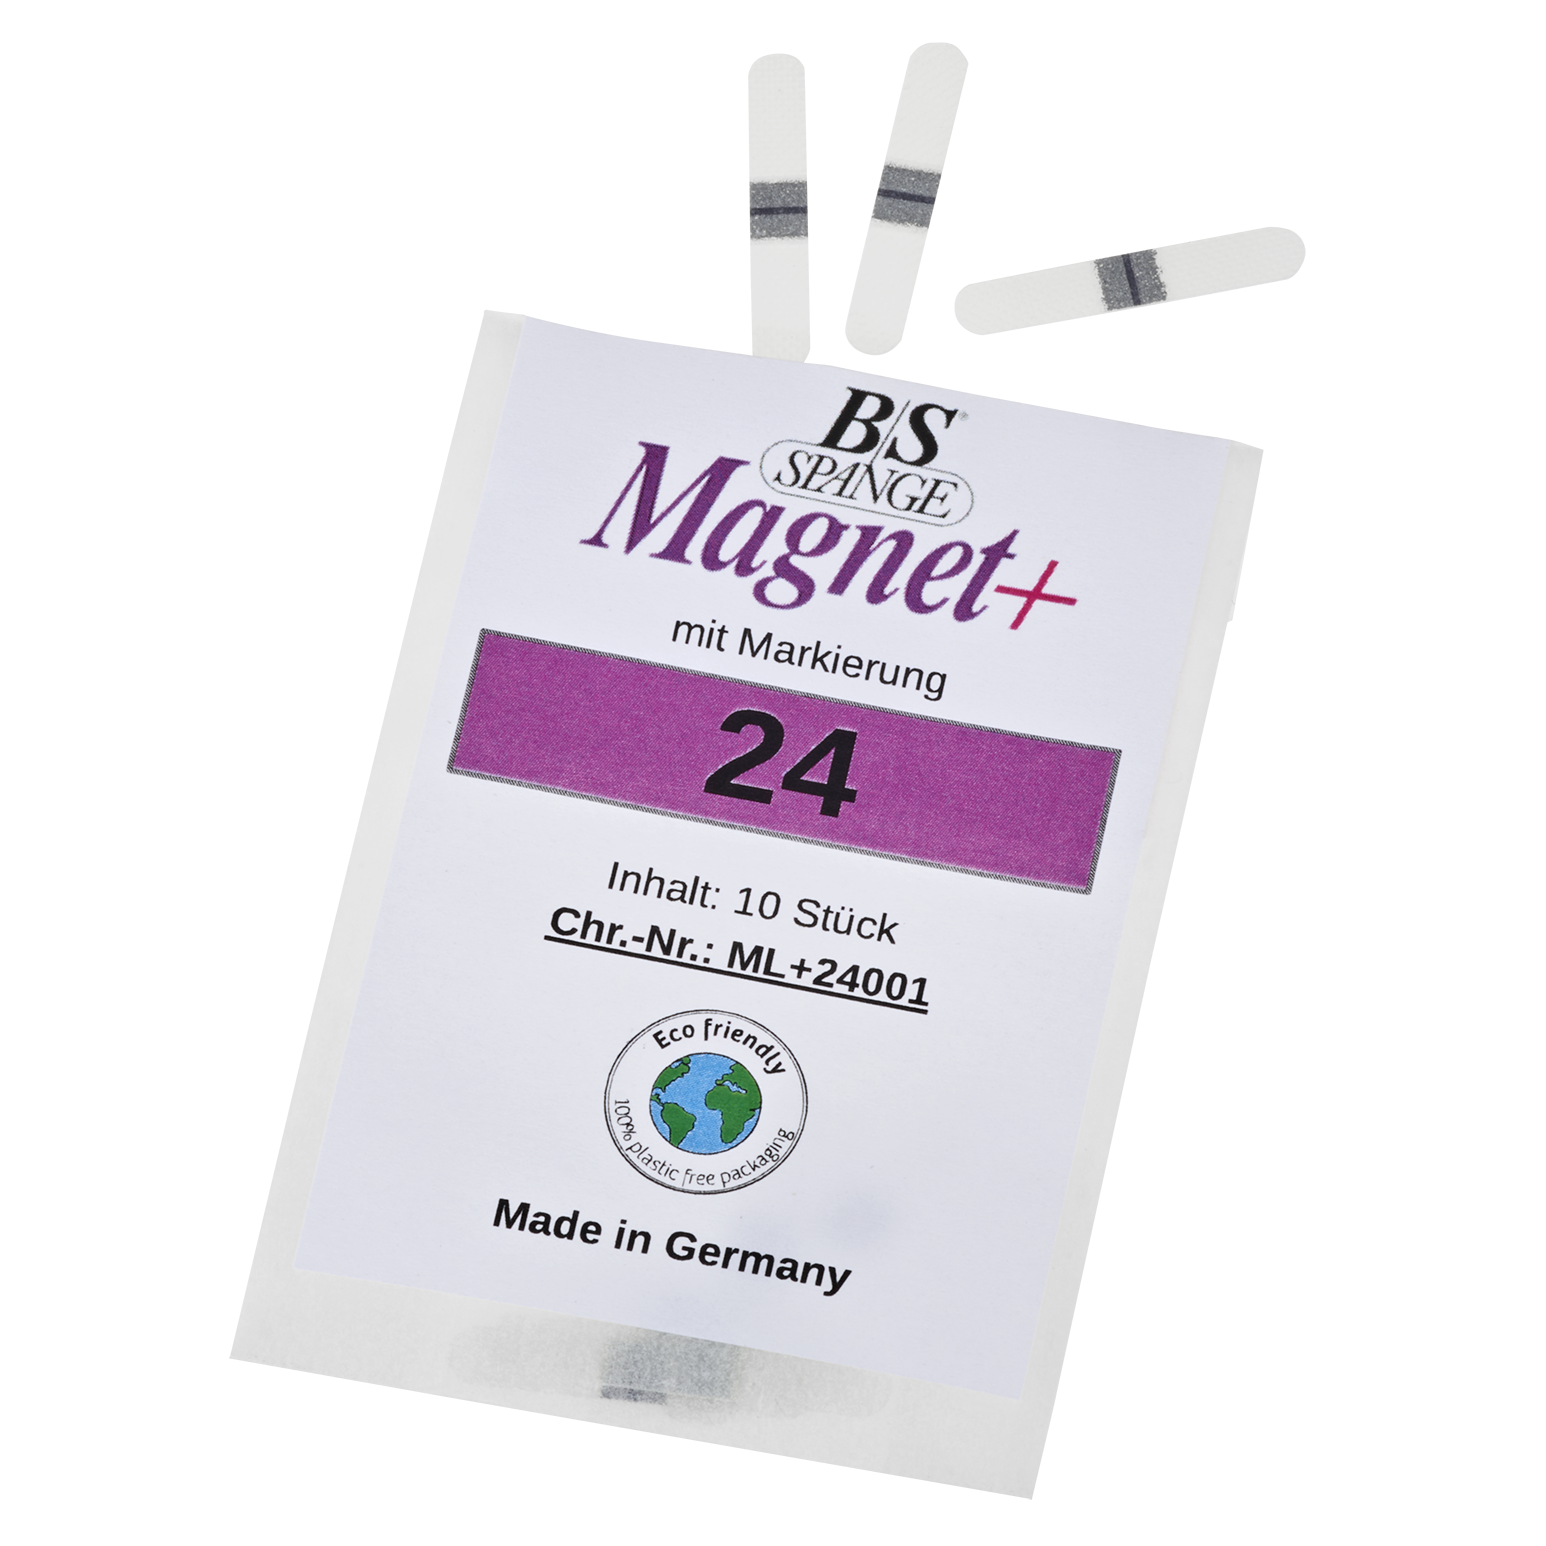 b-s-magnet-spangen-mit-markierung_12018